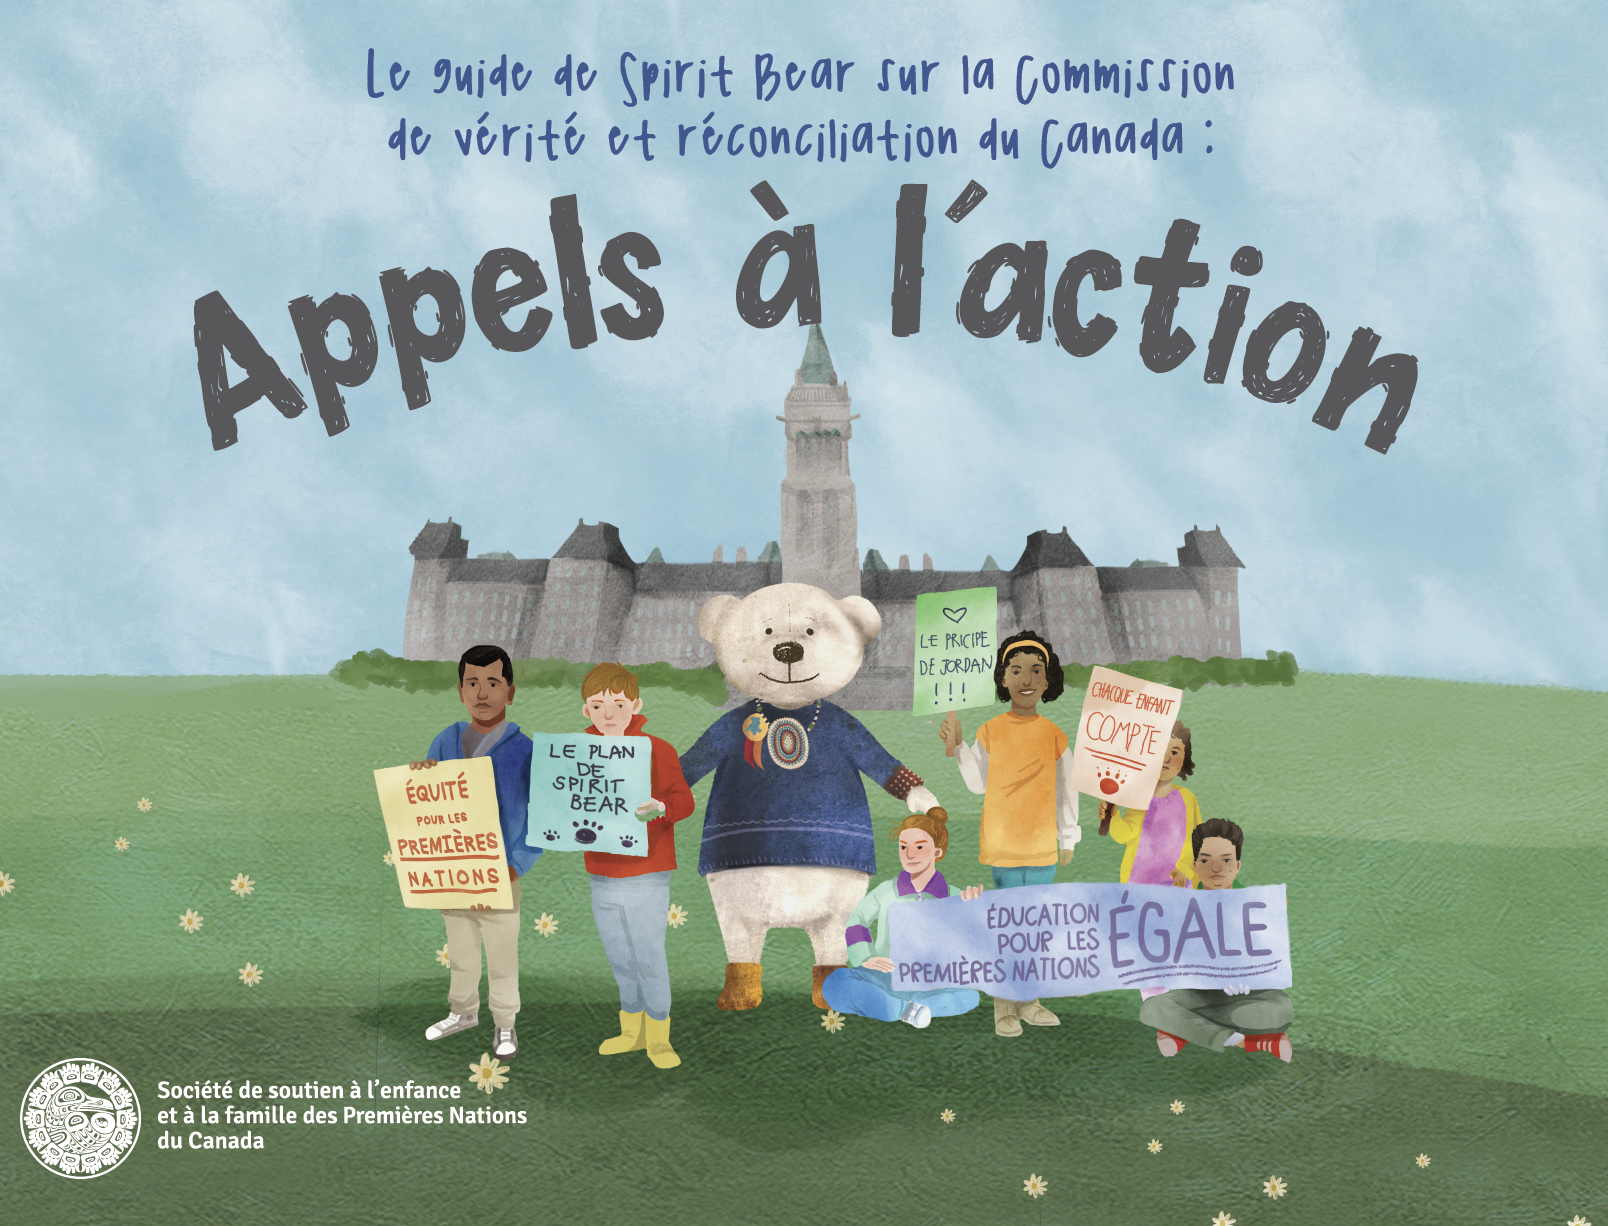 Le guide de Spirit Bear sur la Commission de vérité et réconciliation du Canada: Appels à l'action 